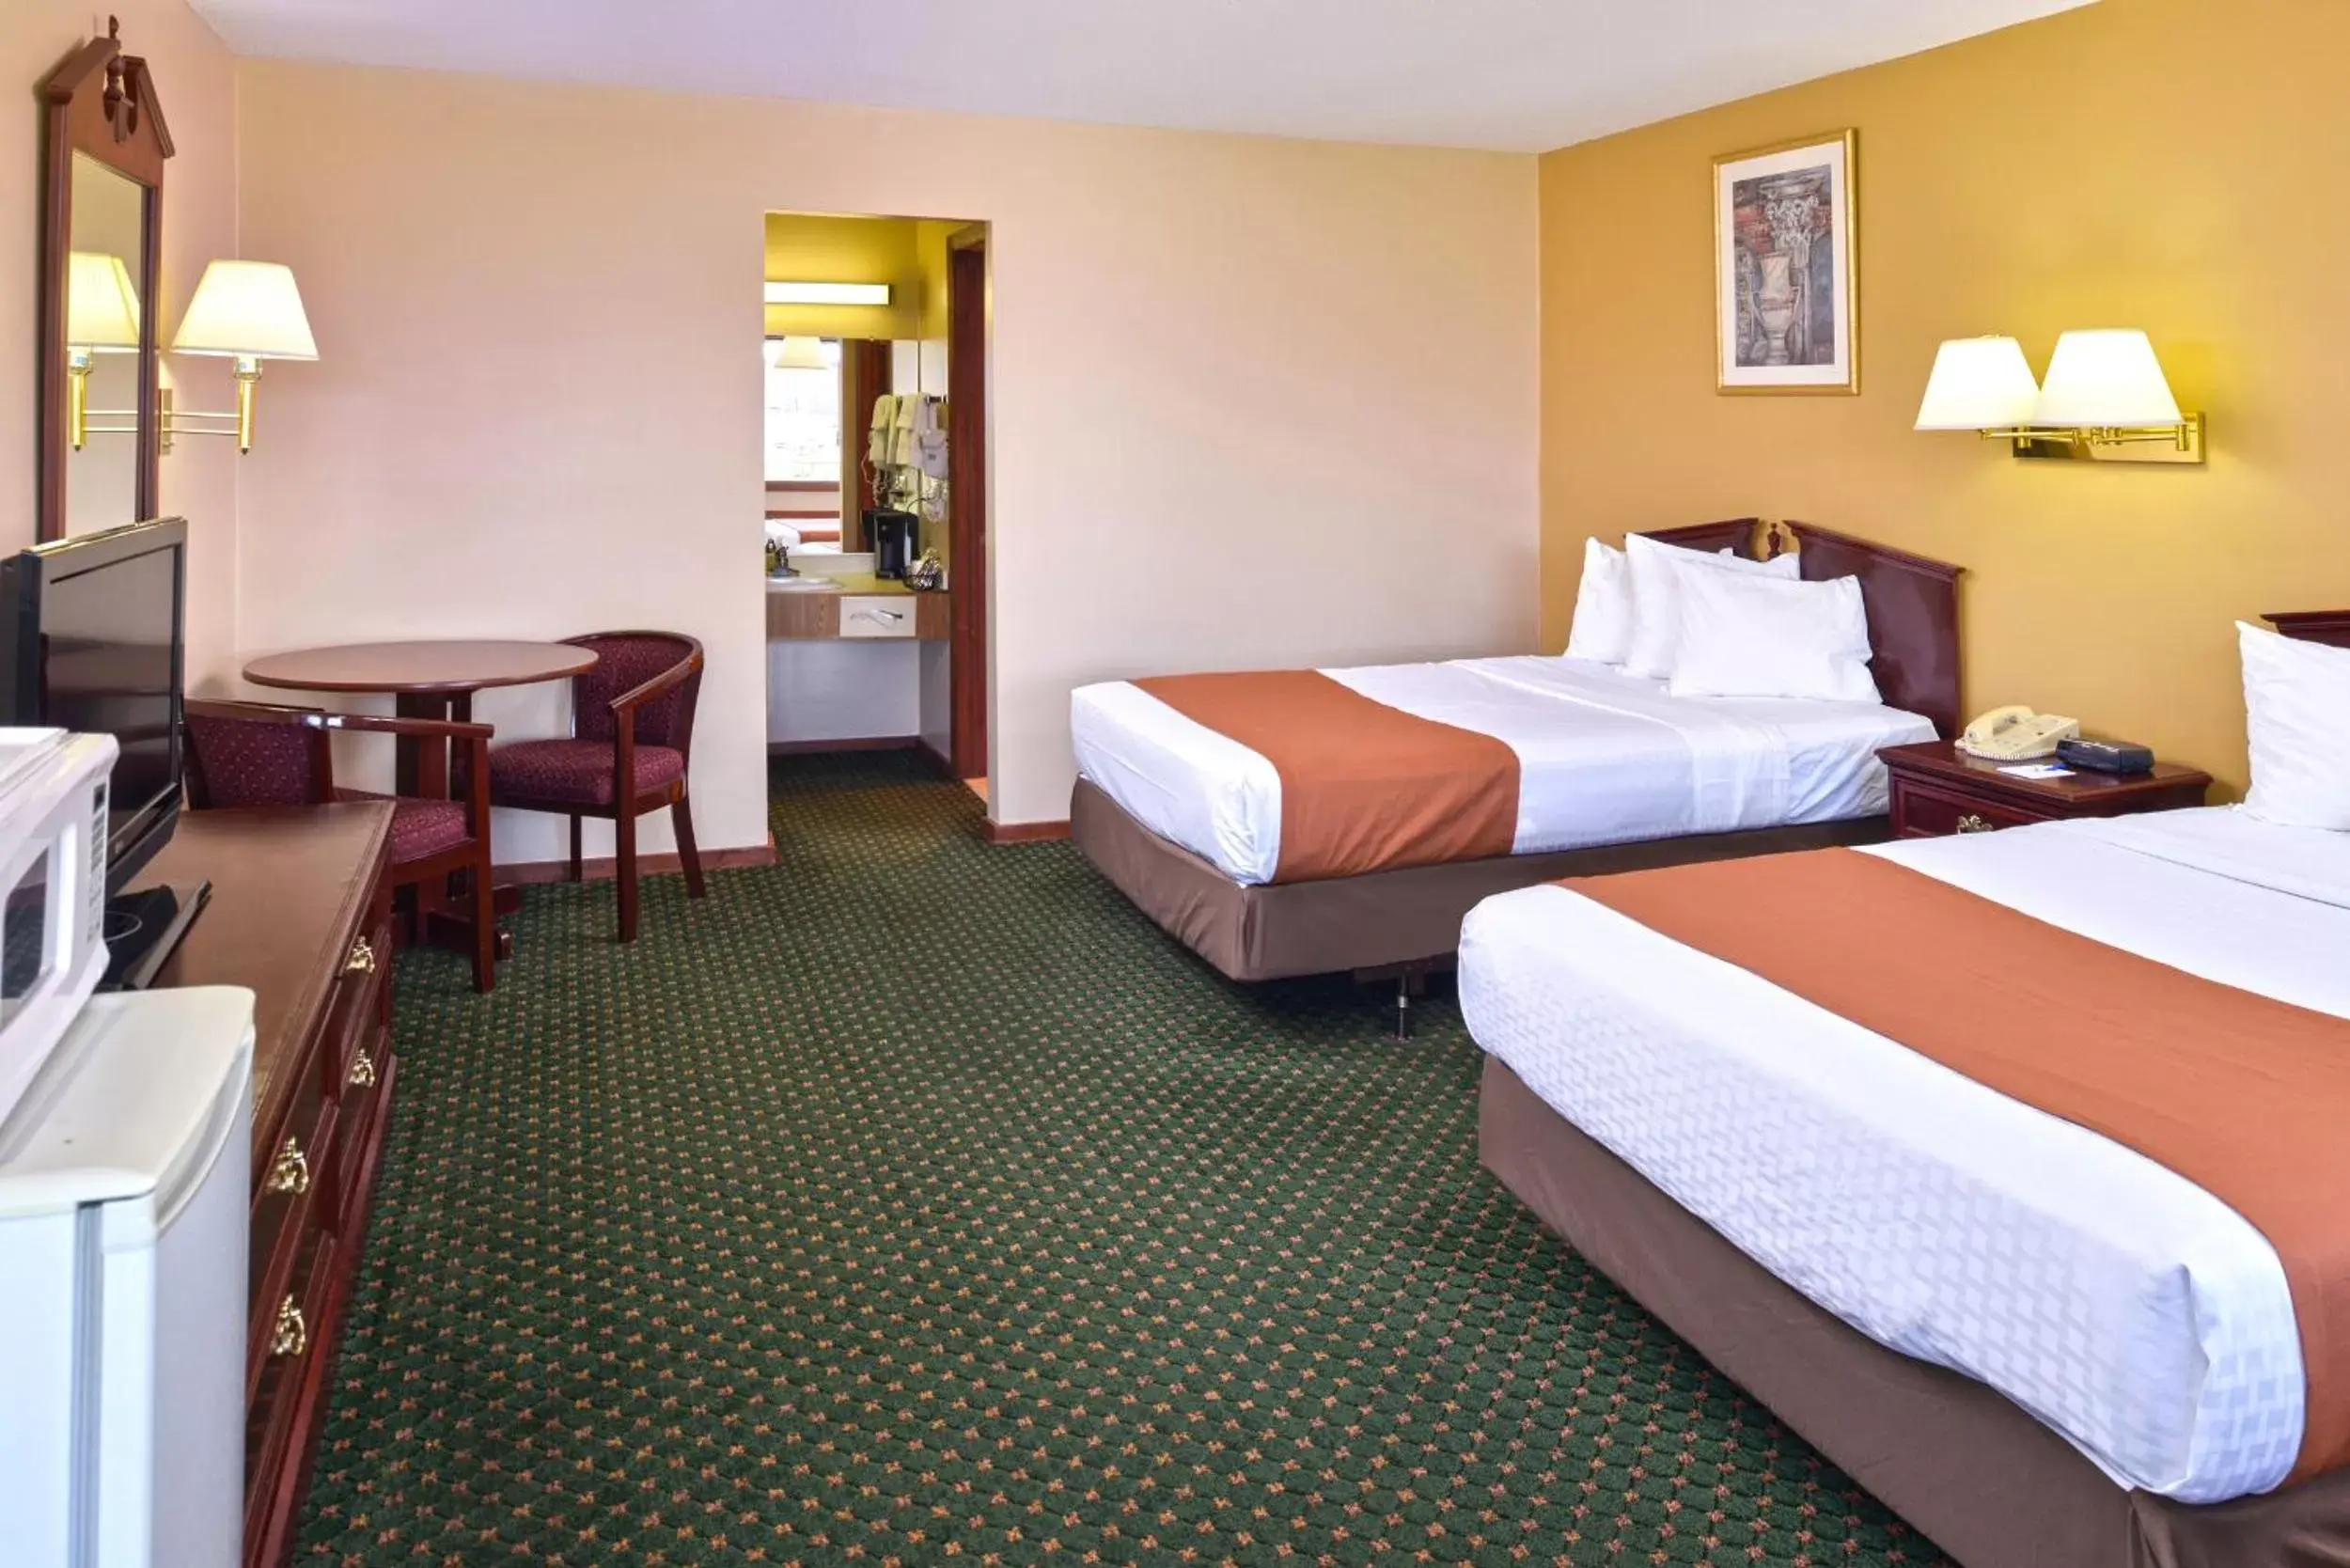 Bedroom, Bed in Americas Best Value Inn Plattsburgh